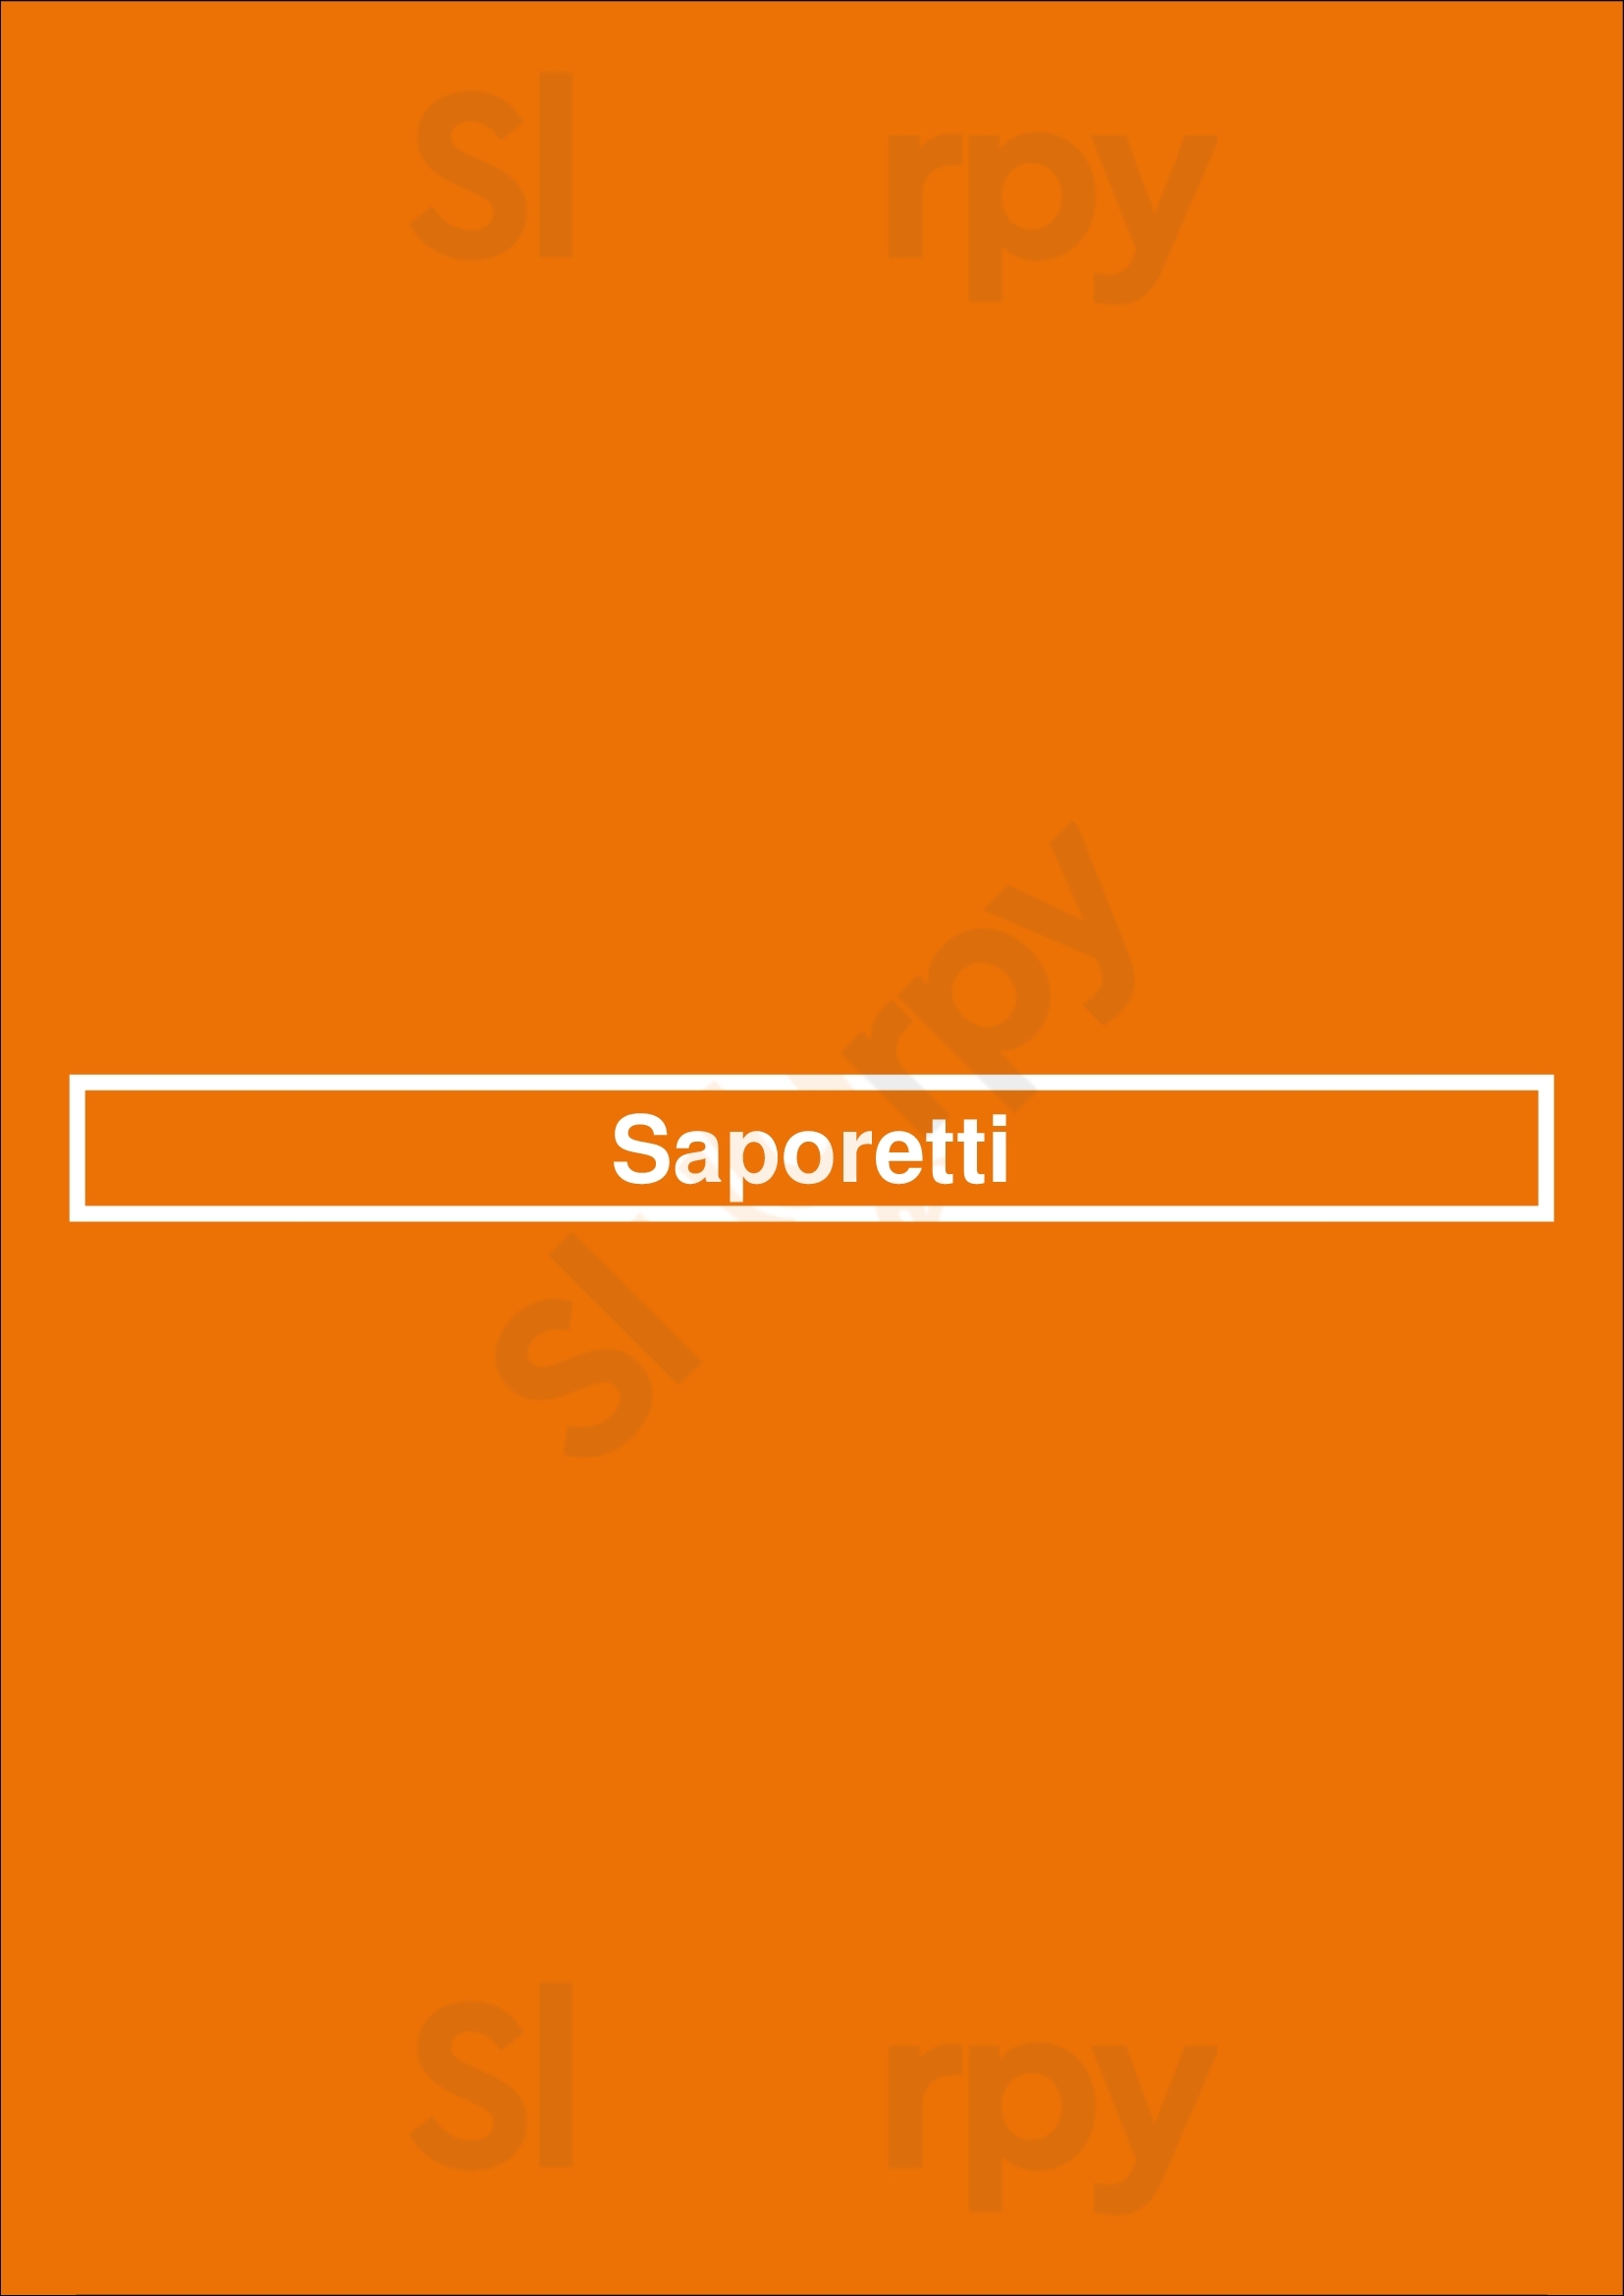 Saporetti Purmerend Menu - 1